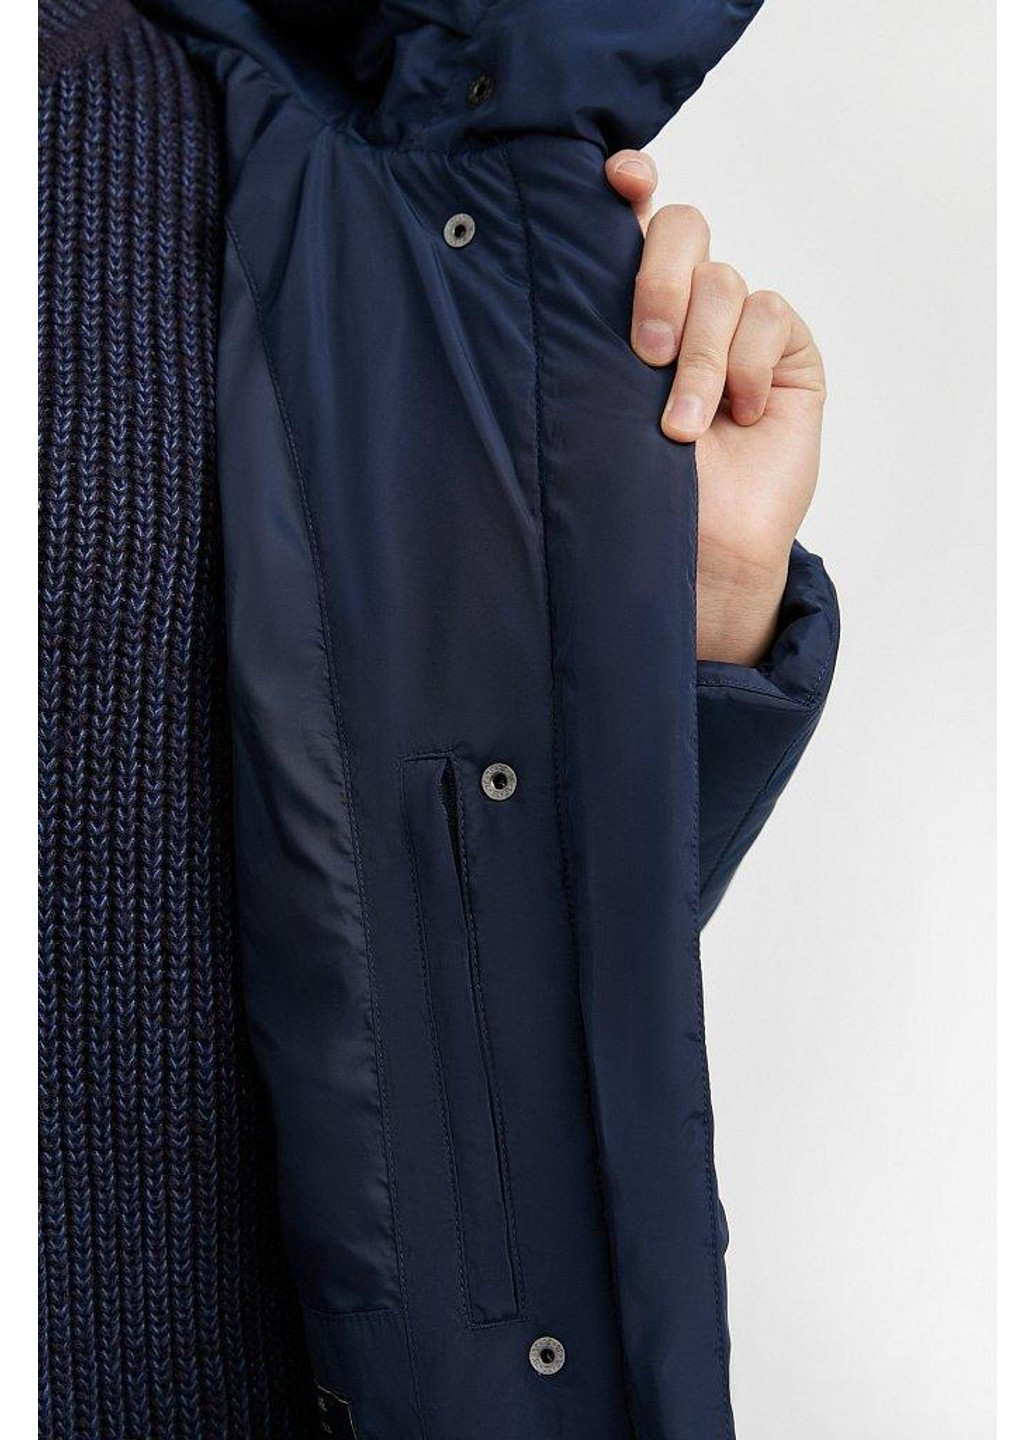 Темно-синяя зимняя зимняя куртка a20-11006-101 Finn Flare